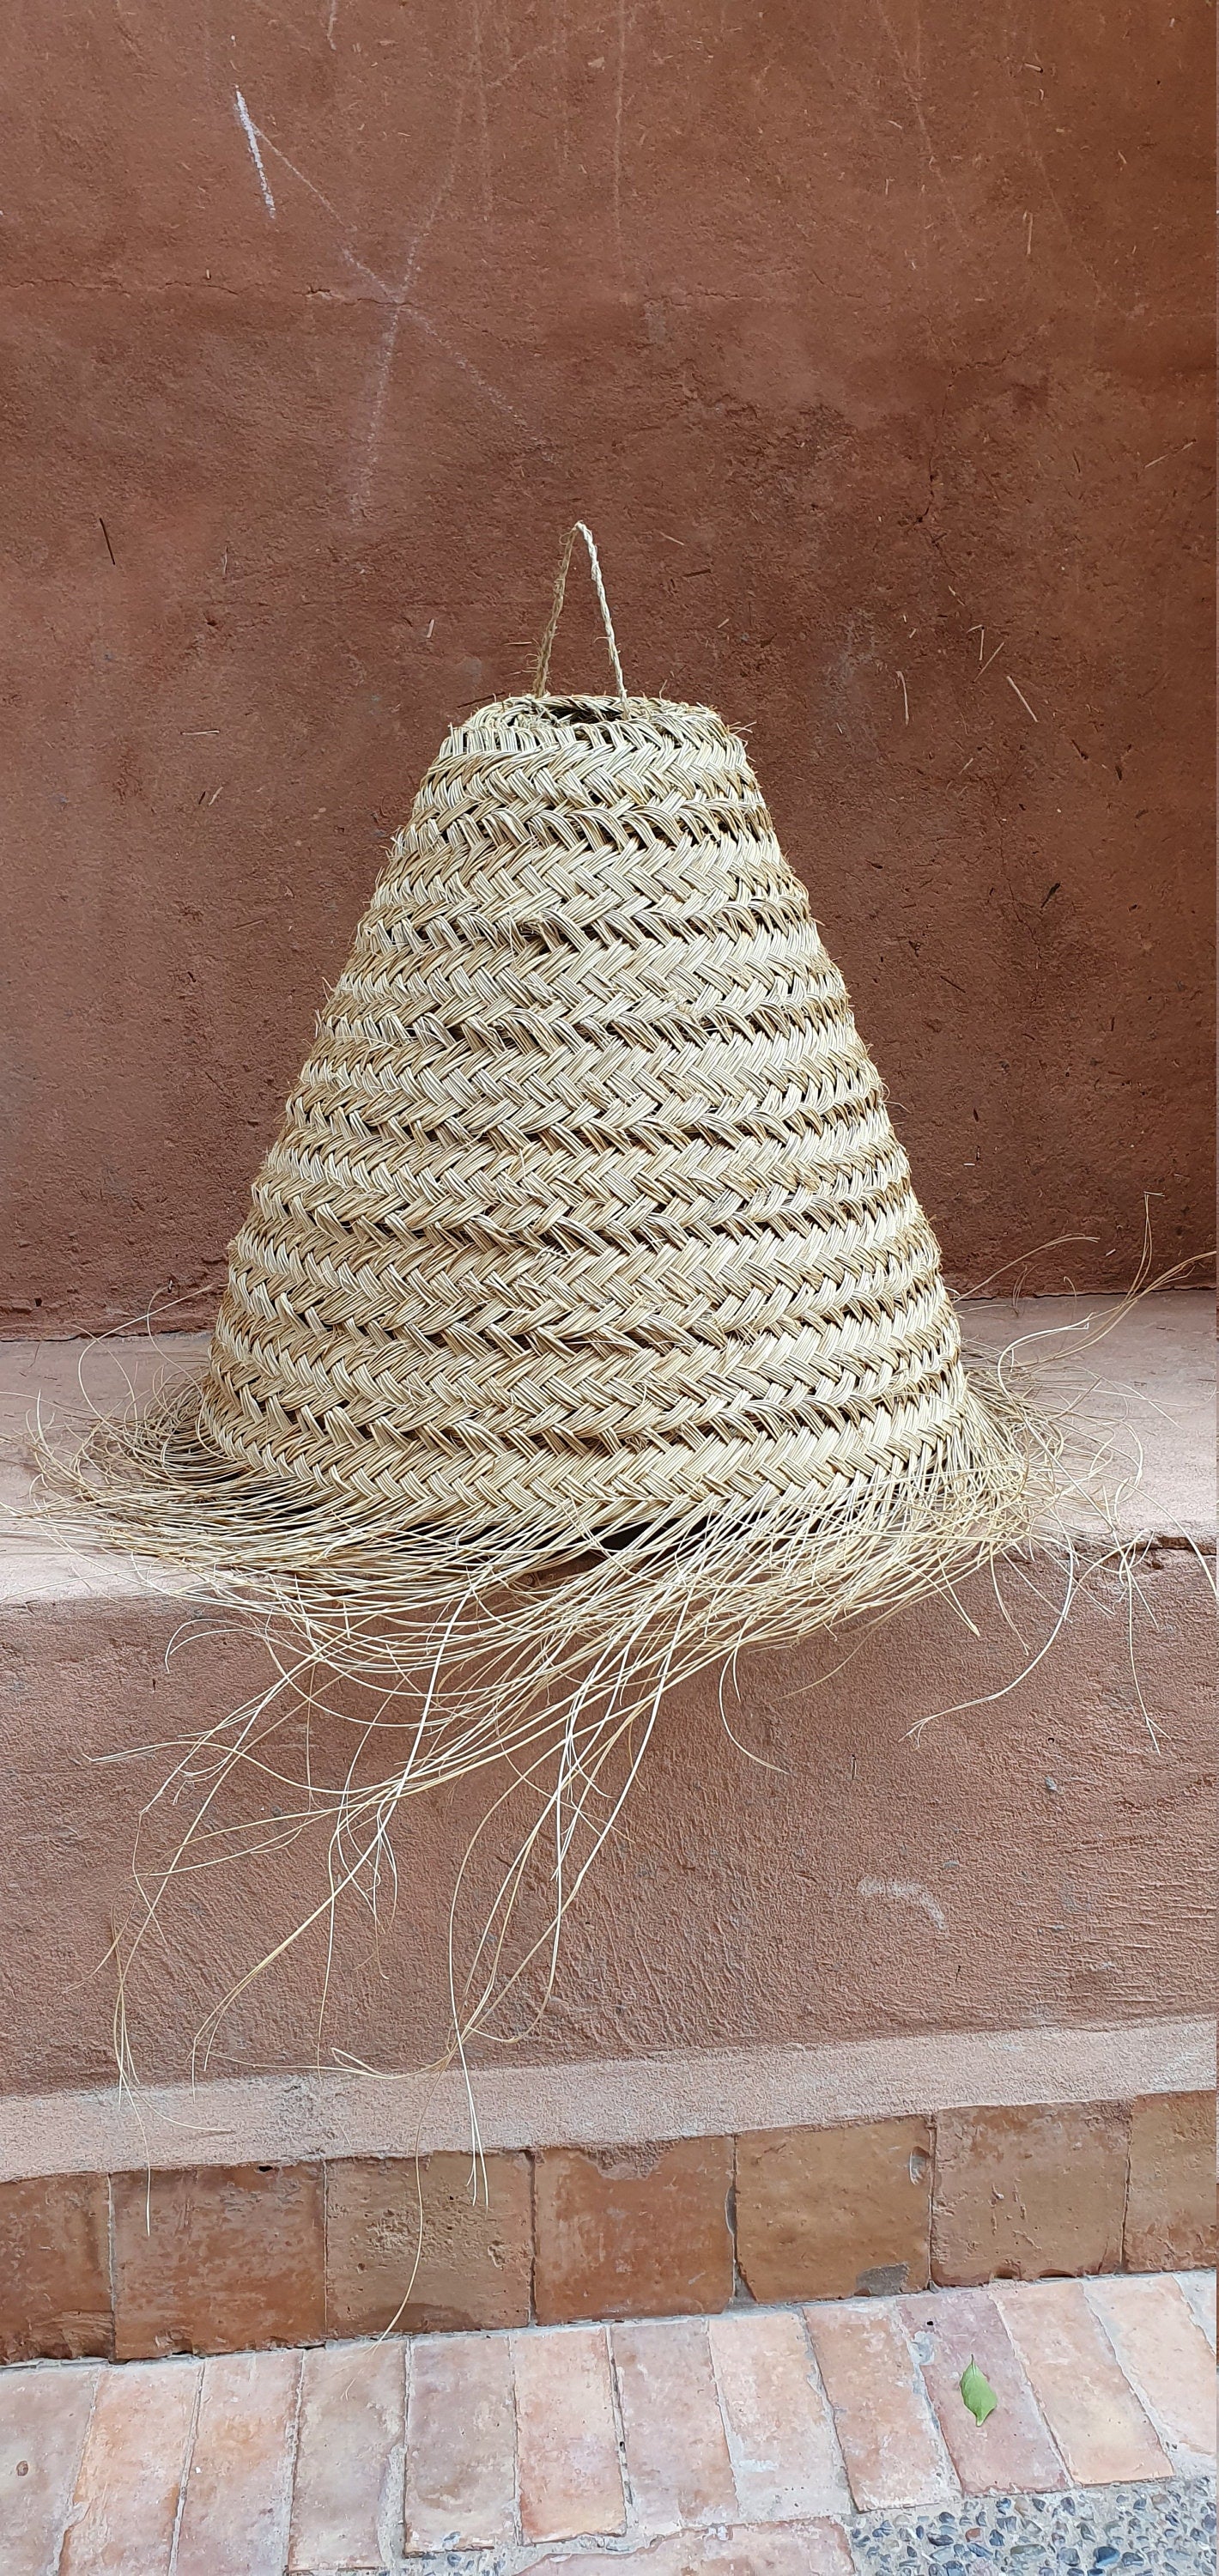 Plafonnier marocain en doum, design cône, fait de fibres naturelles tressées